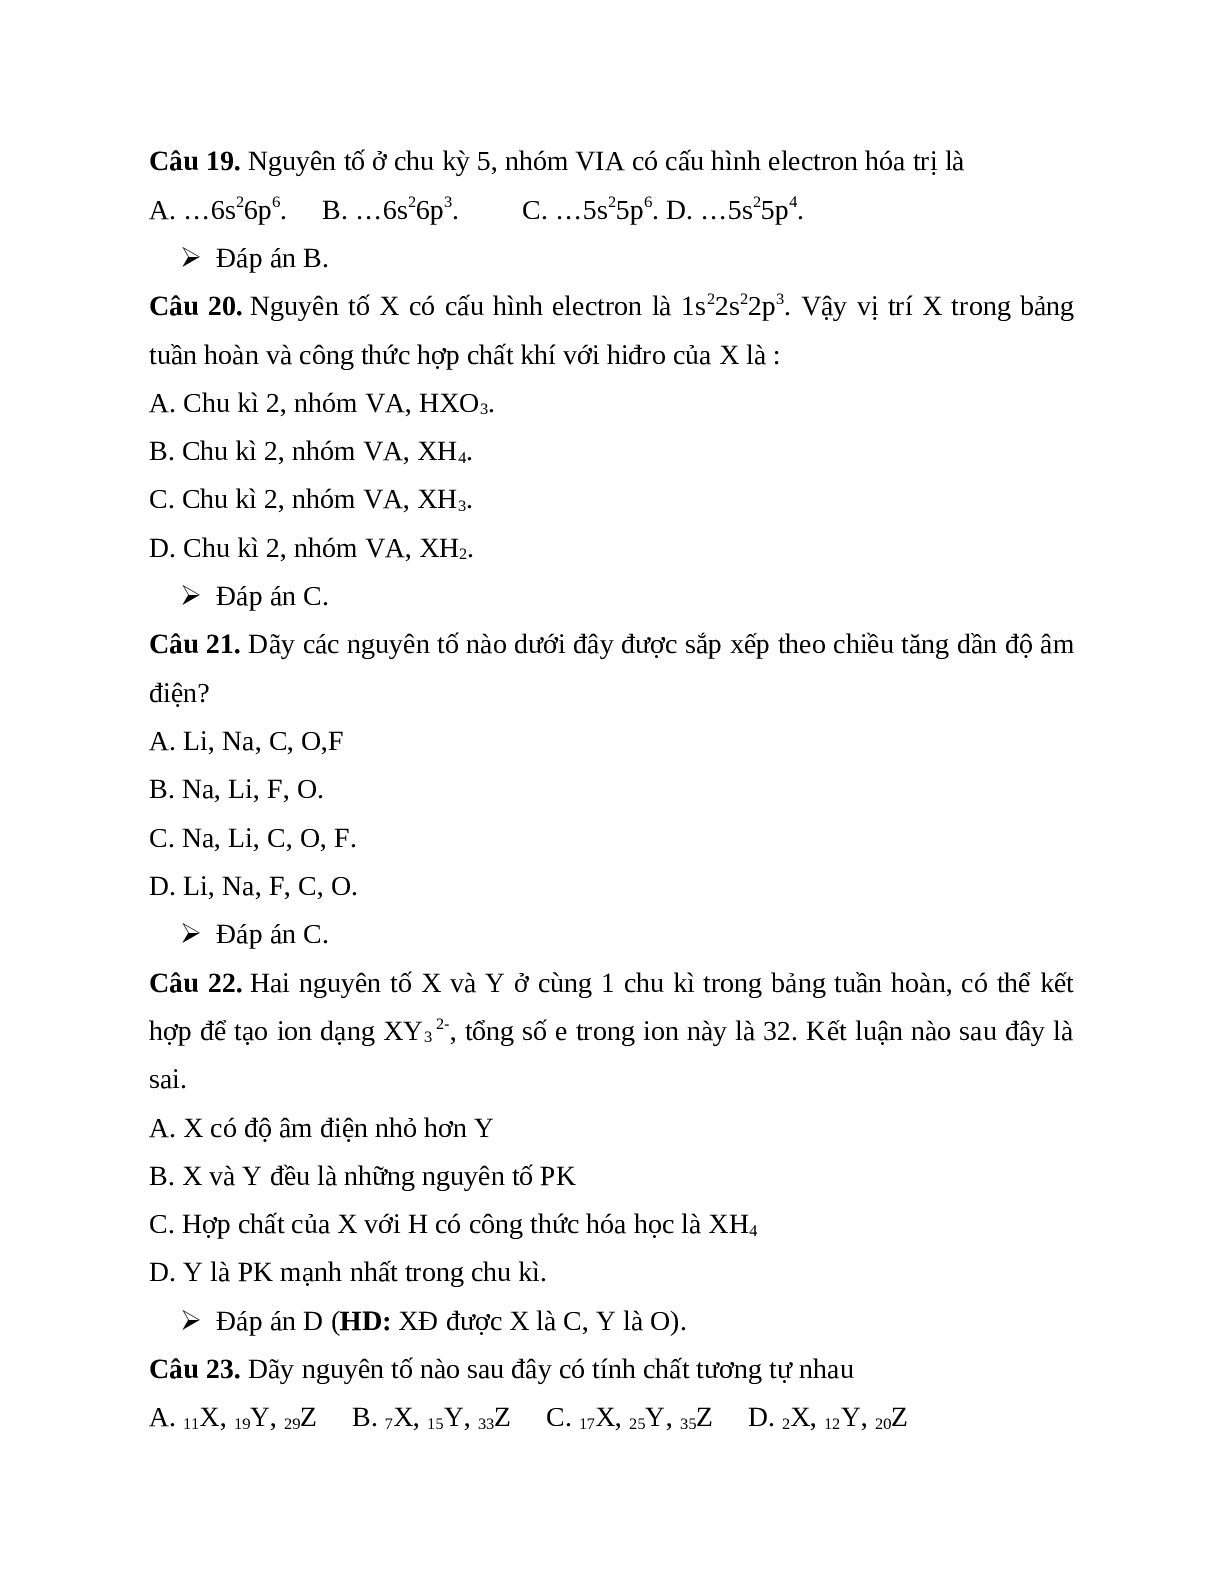 40 bài tập trắc nghiệm chương Bảng tuần hoàn các nguyên tố hóa học có đáp án (trang 5)